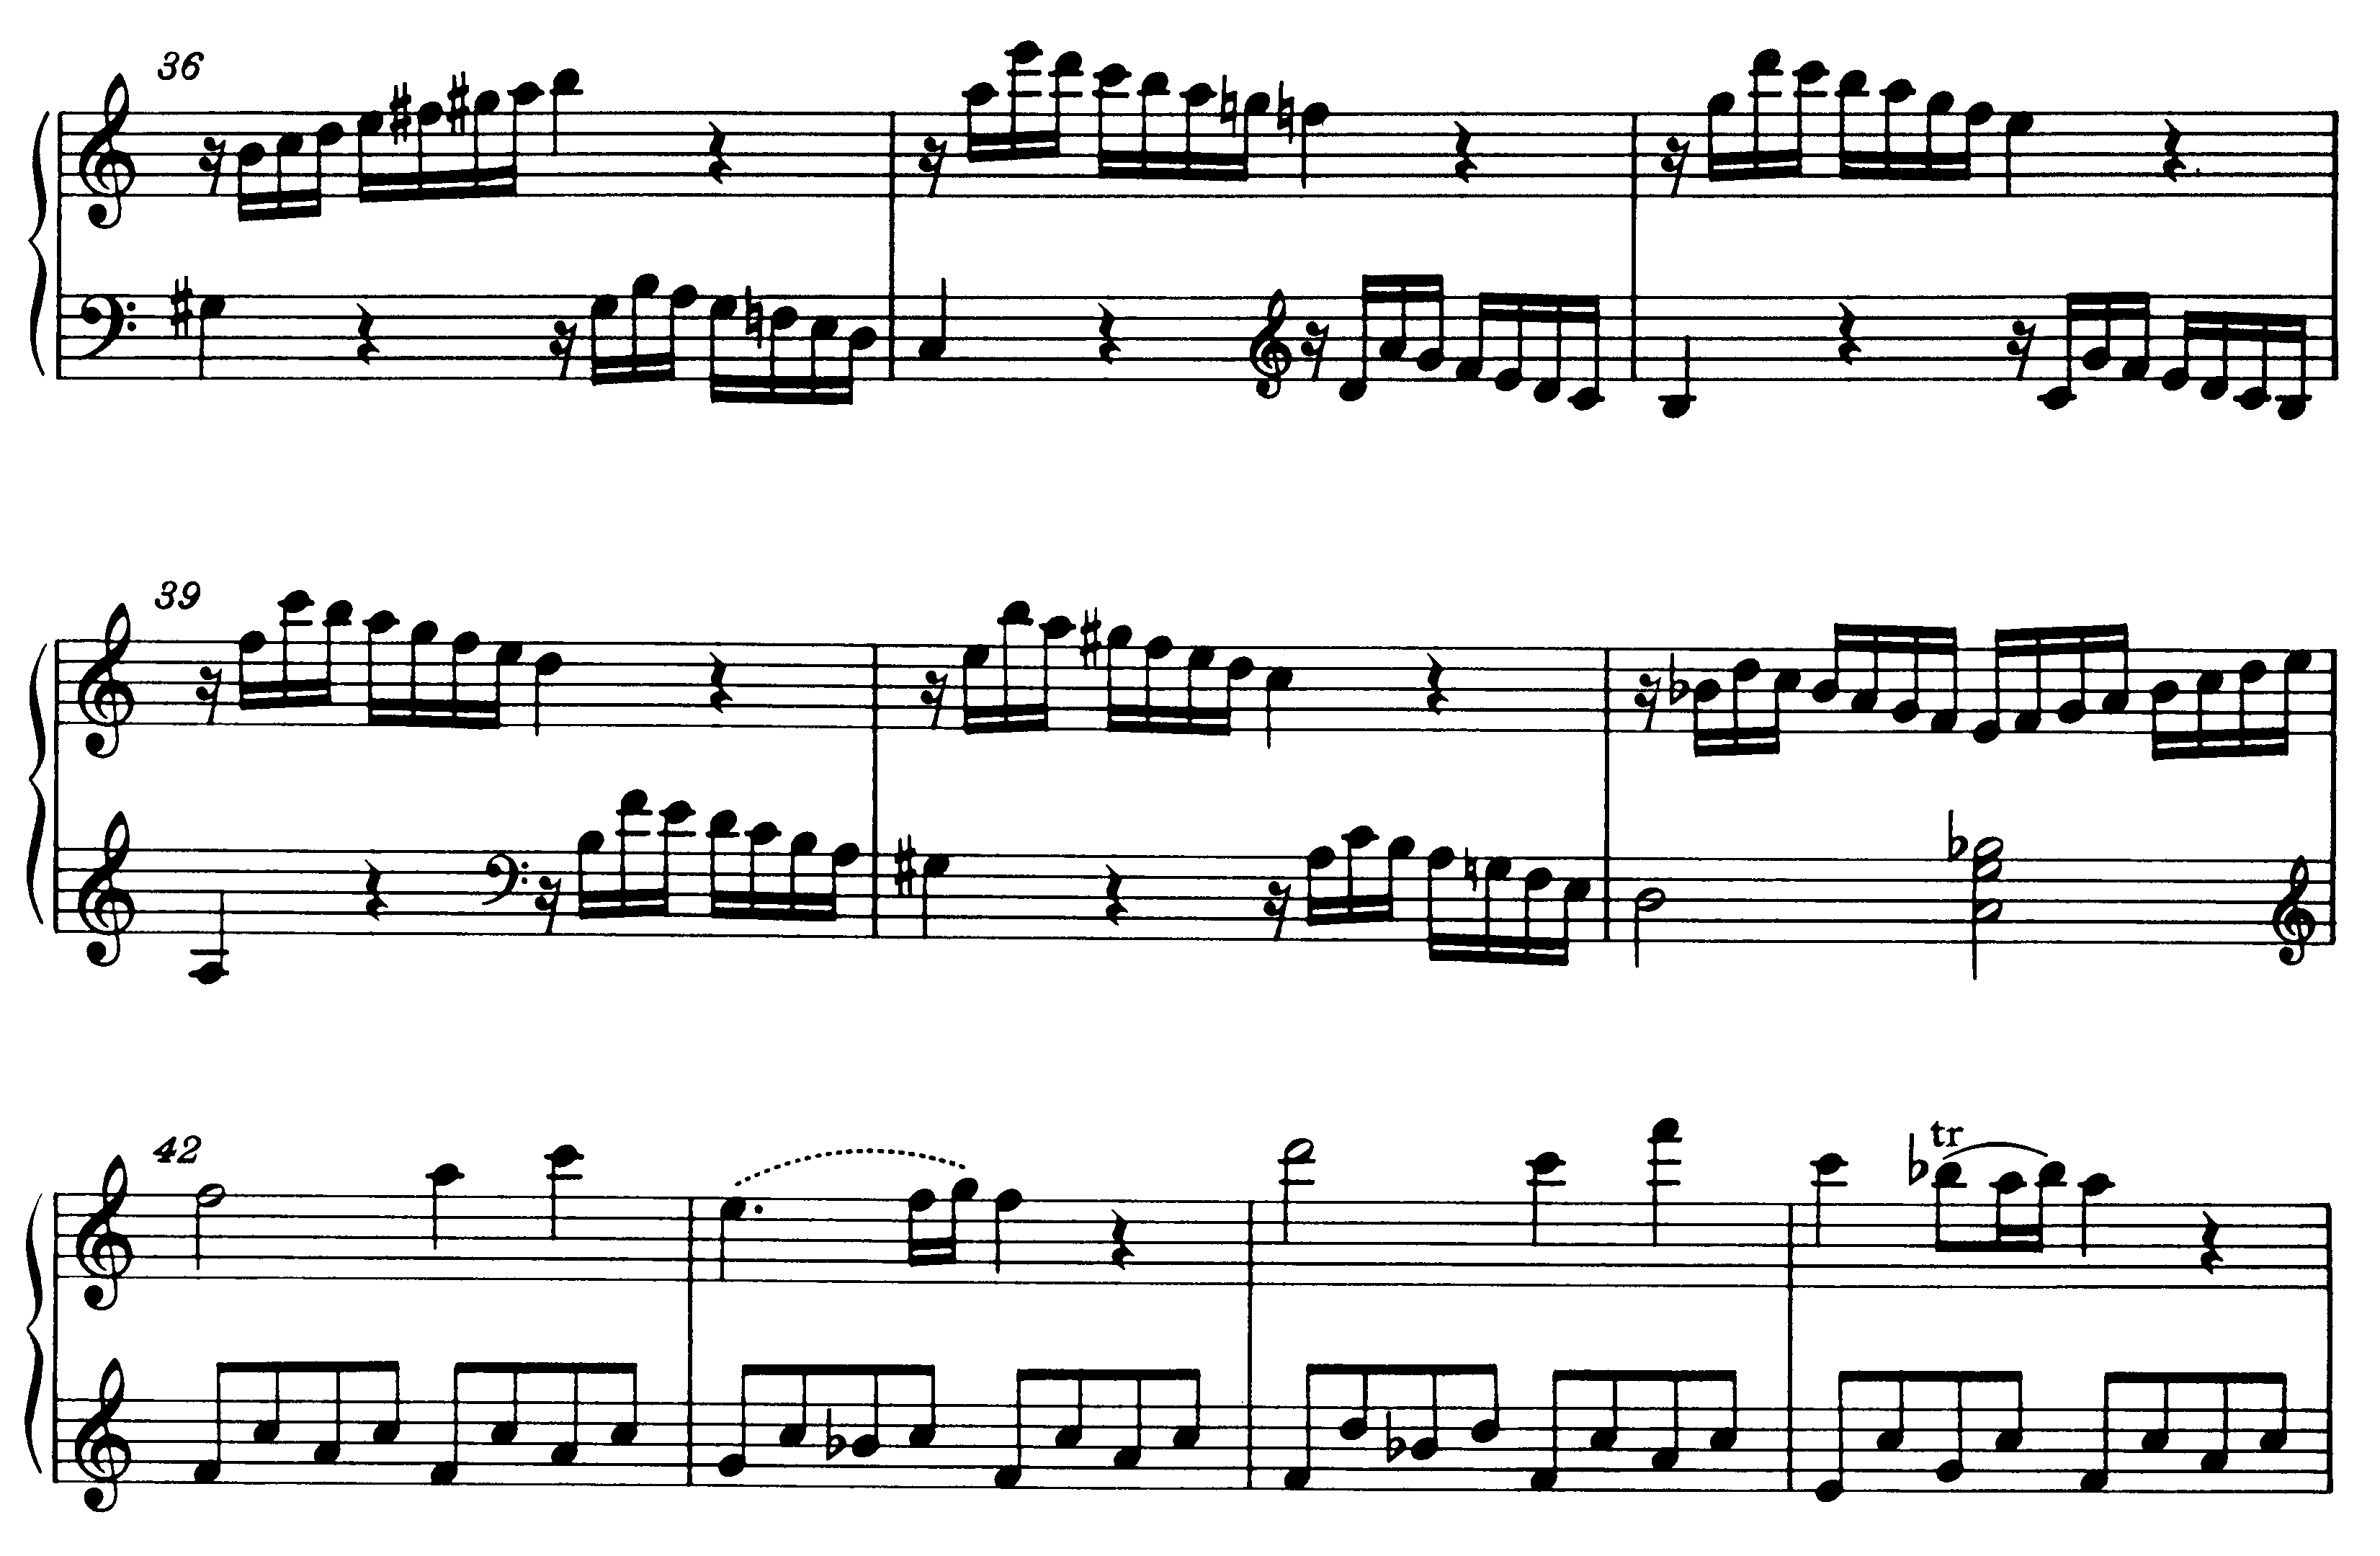 Neapolitaner beim Übergang zur Reprise in der Sonate C-Dur KV 545 (Mozart)